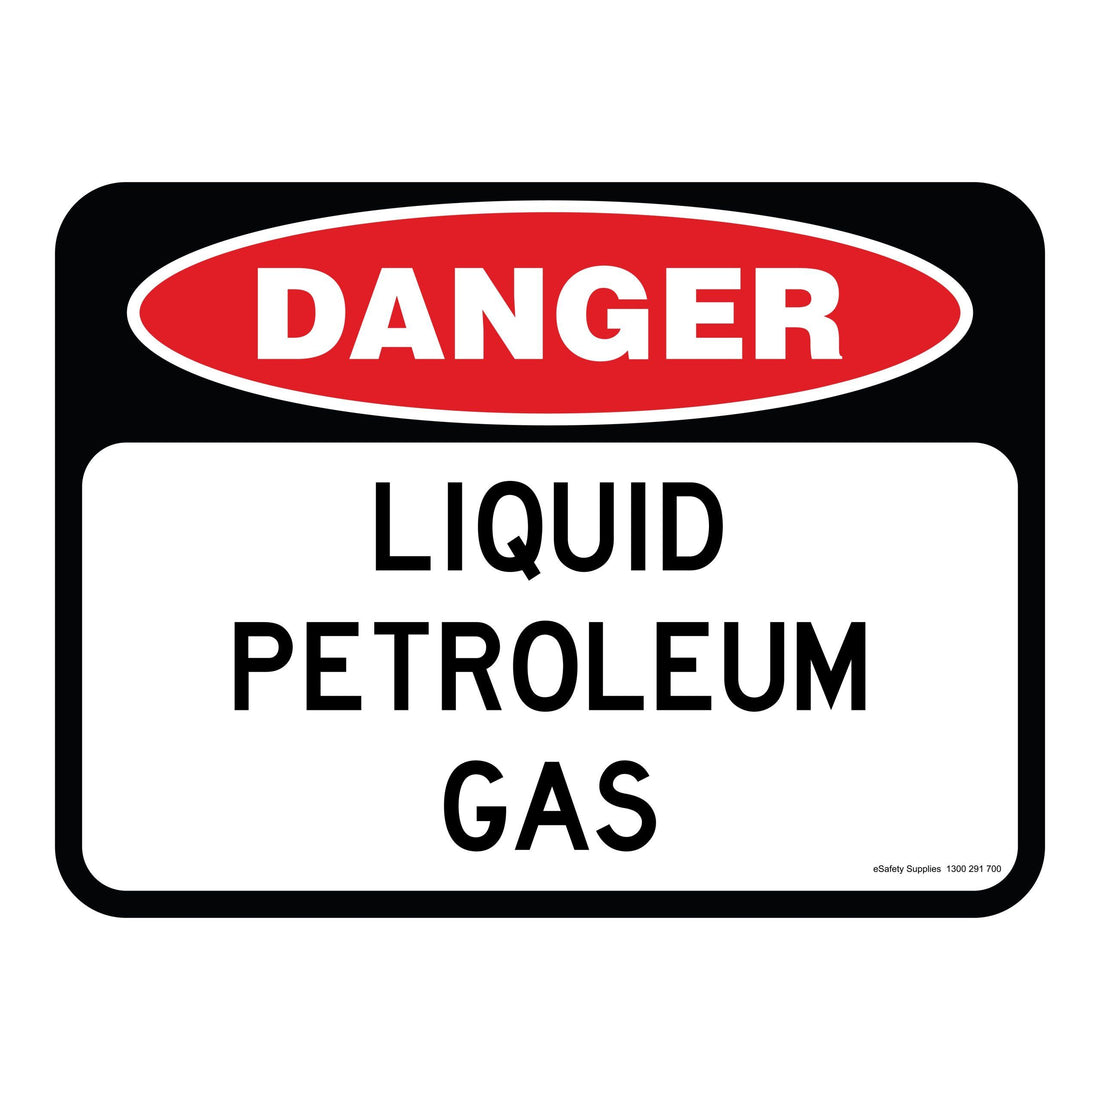 DANGER-LIQUID-PETROLEUM-GAS